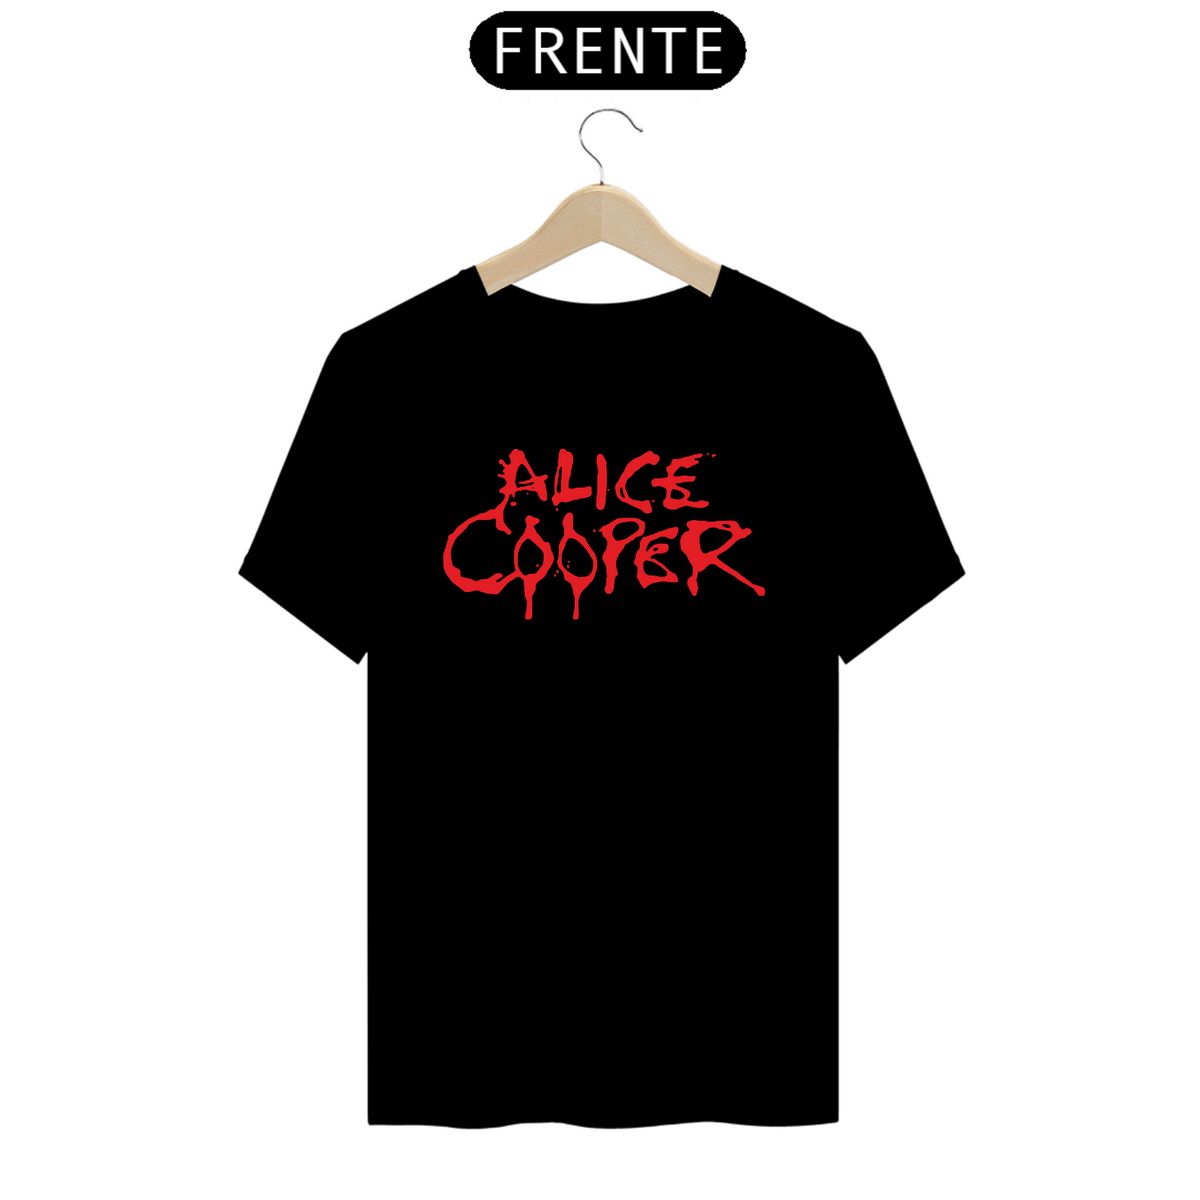 Nome do produto: Alice Cooper